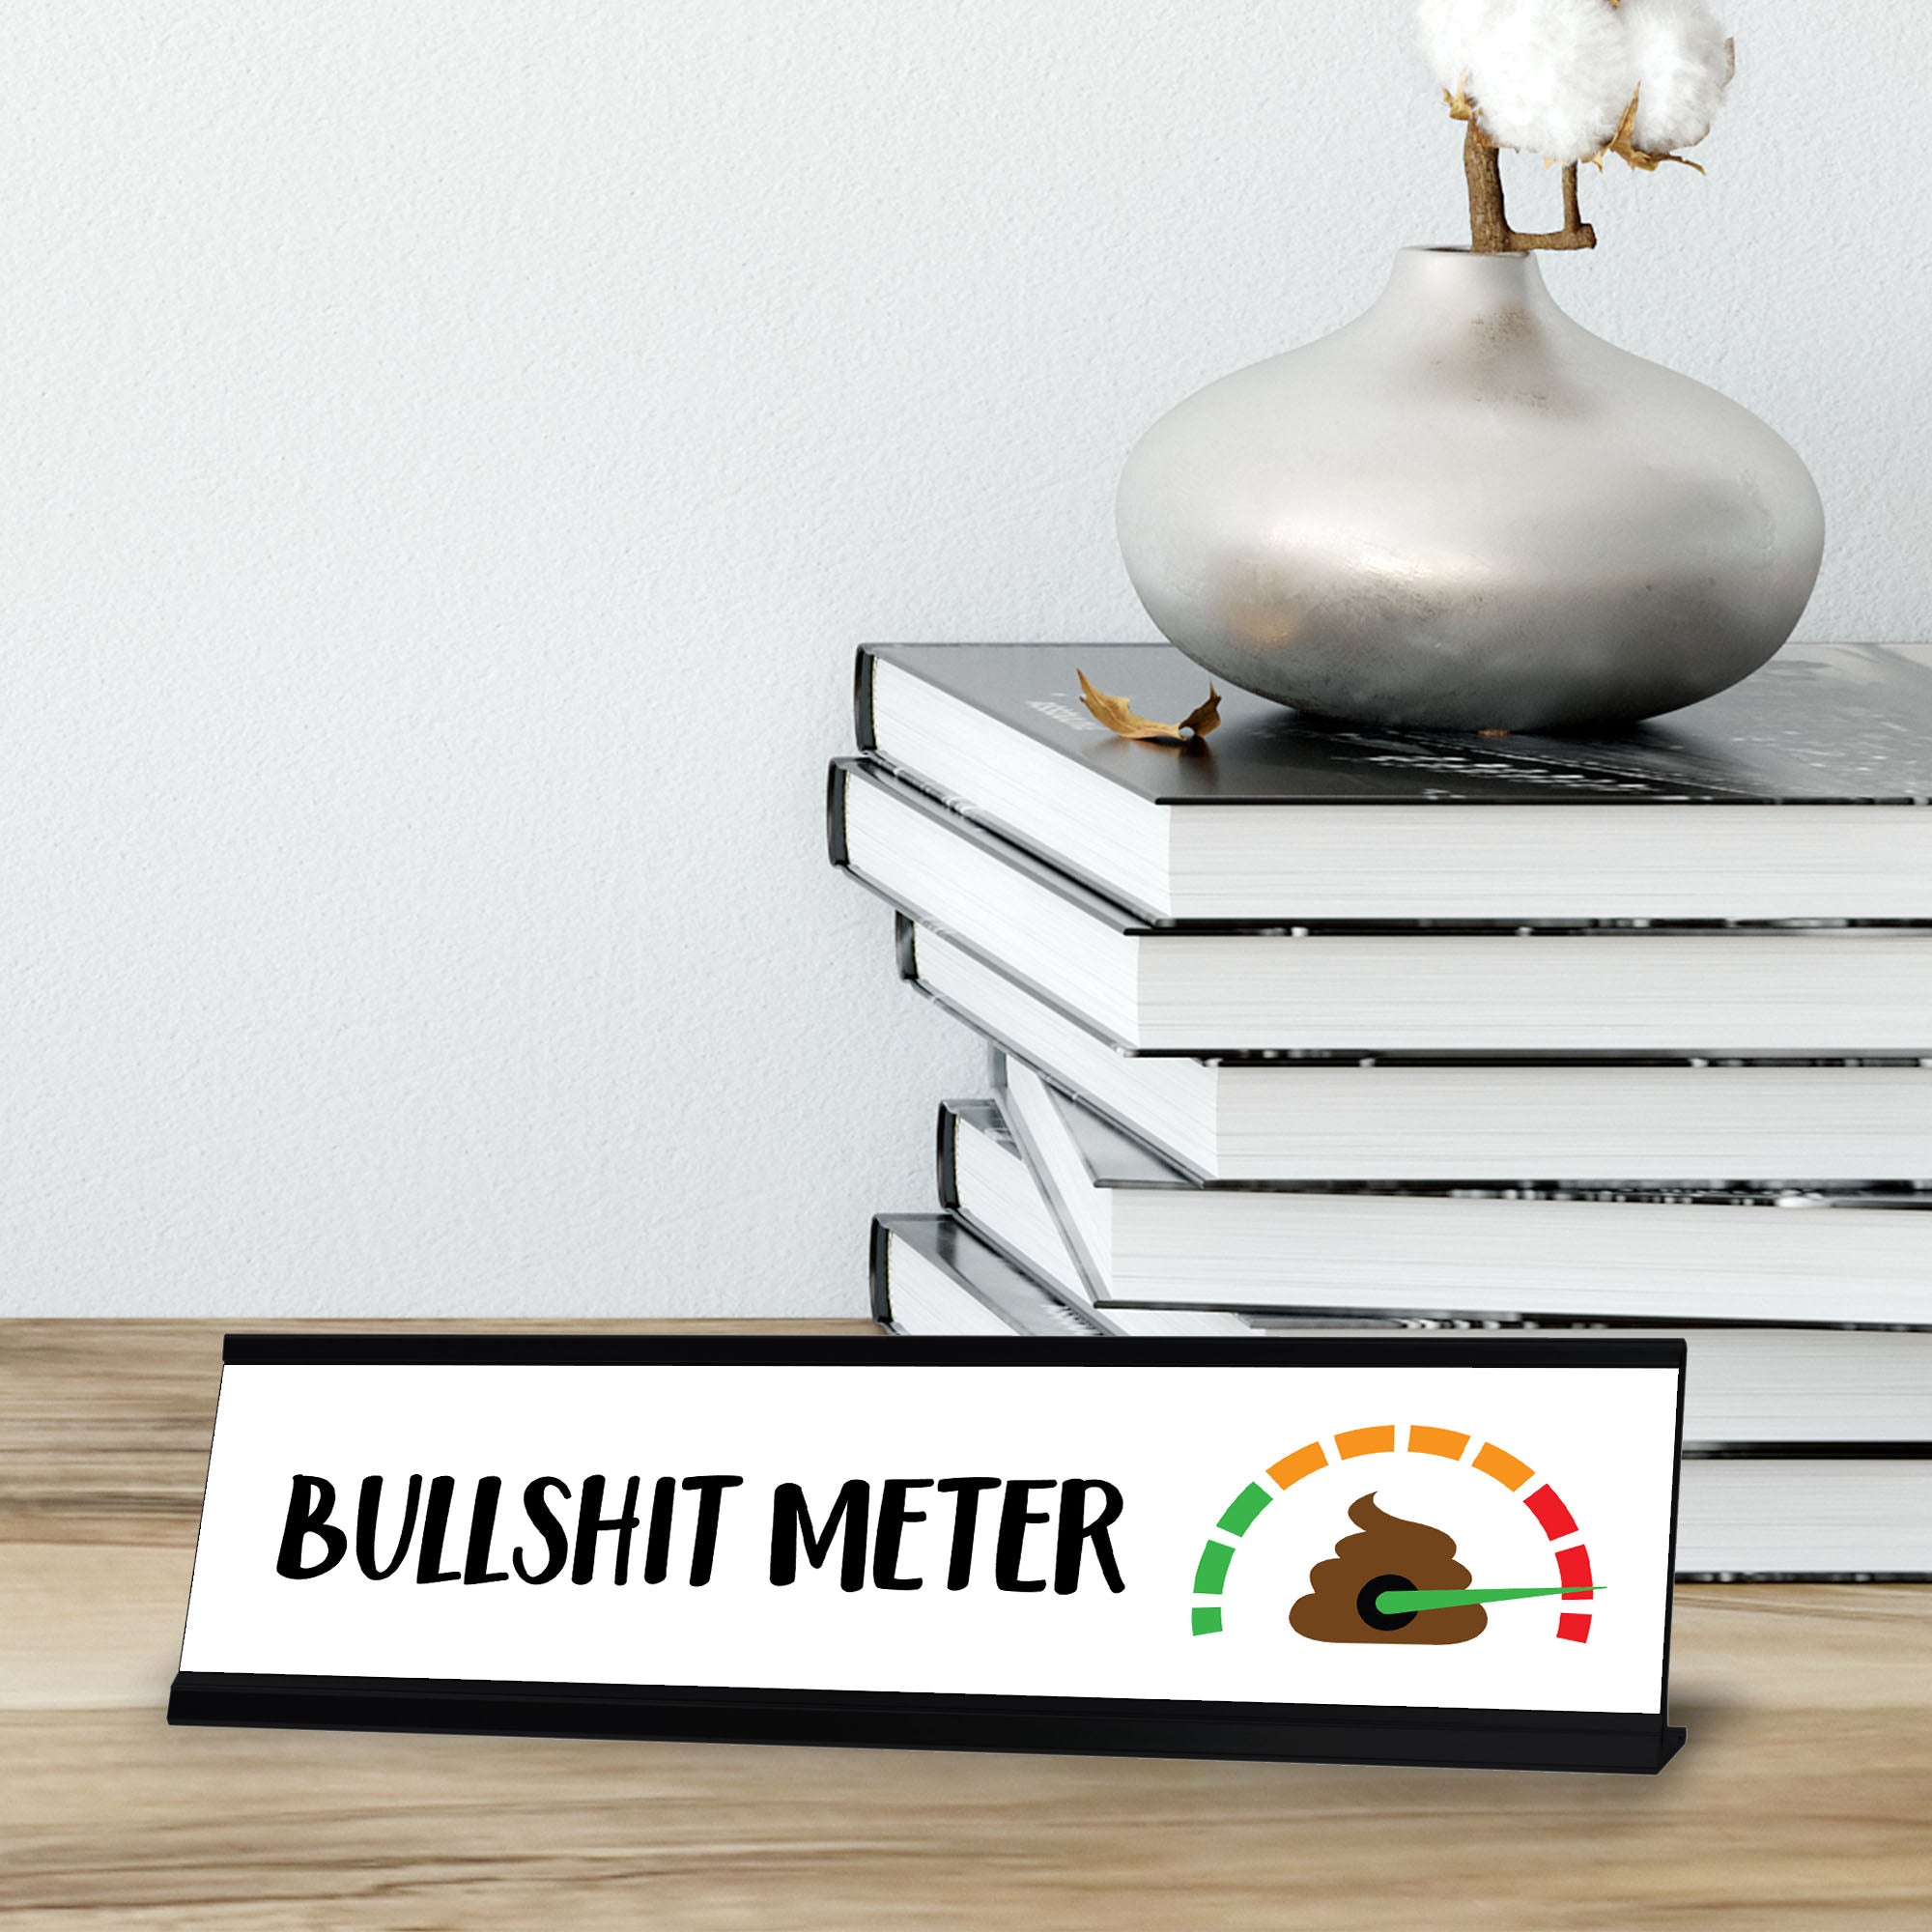 Bullshit Meter, Designer Series Desk Sign Novelty Nameplate (2 x 8")